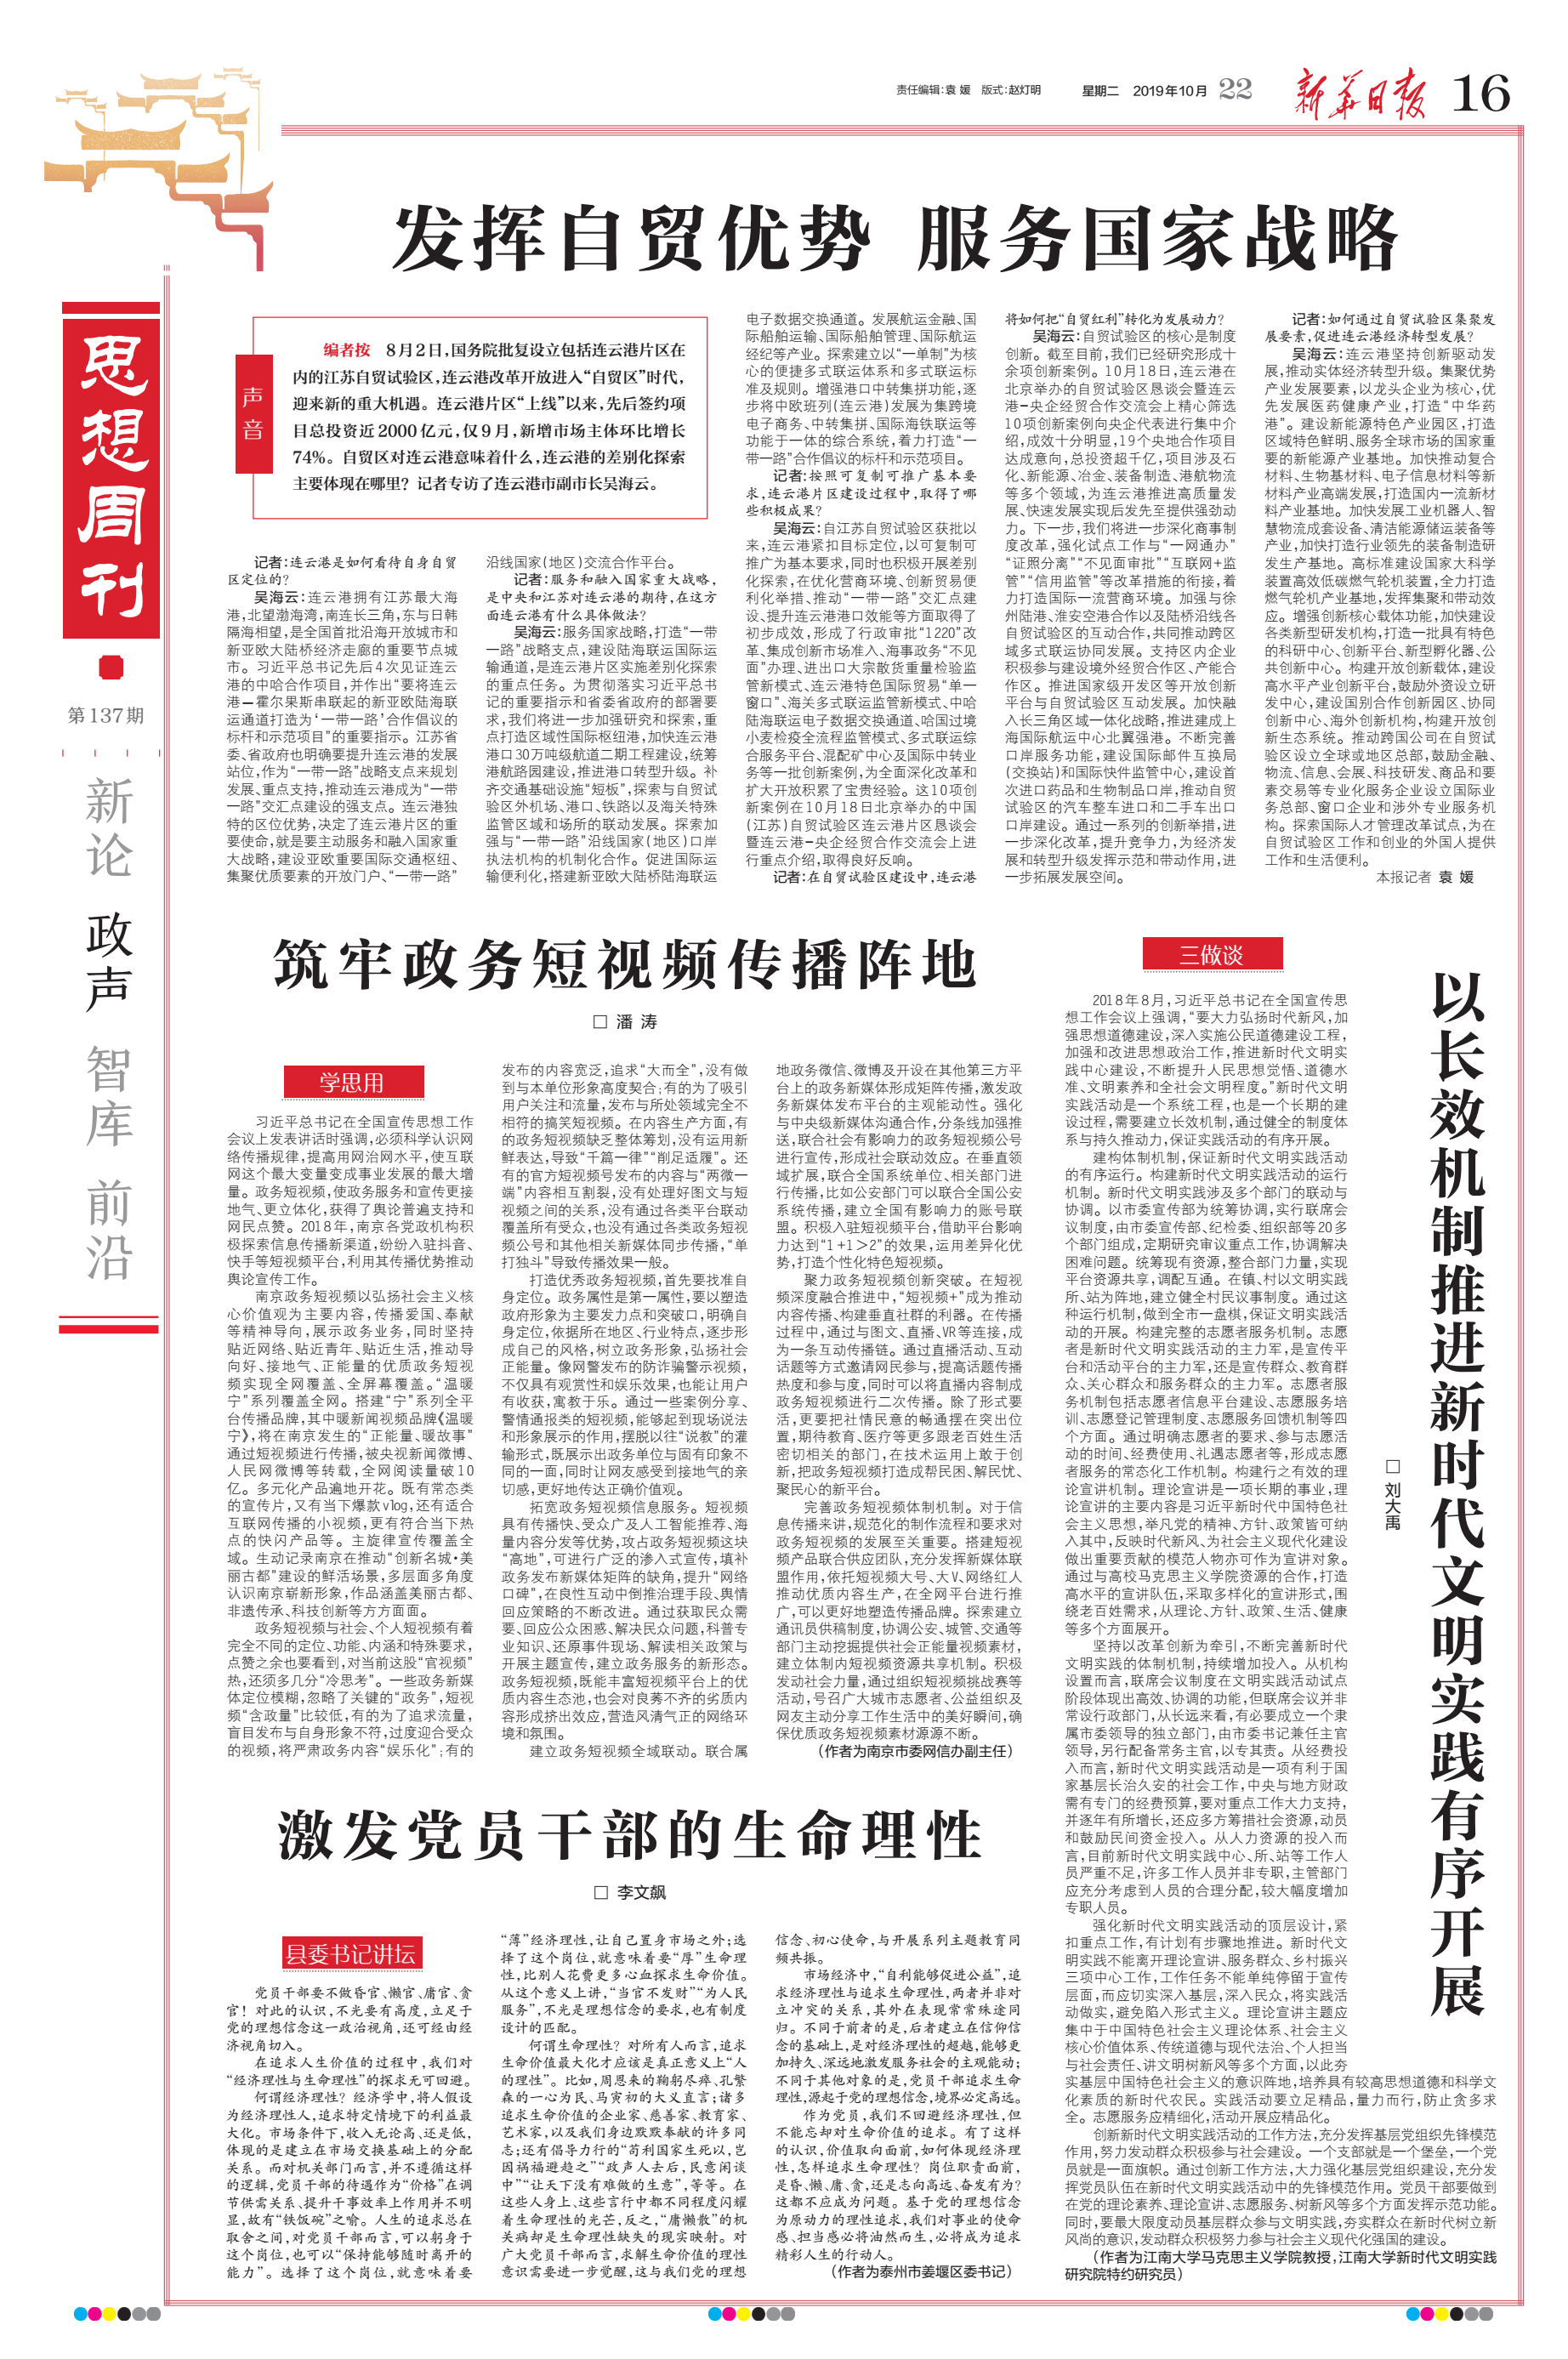 编者按 8月2日,国务院批复设立包括连云港片区在内的江苏自贸